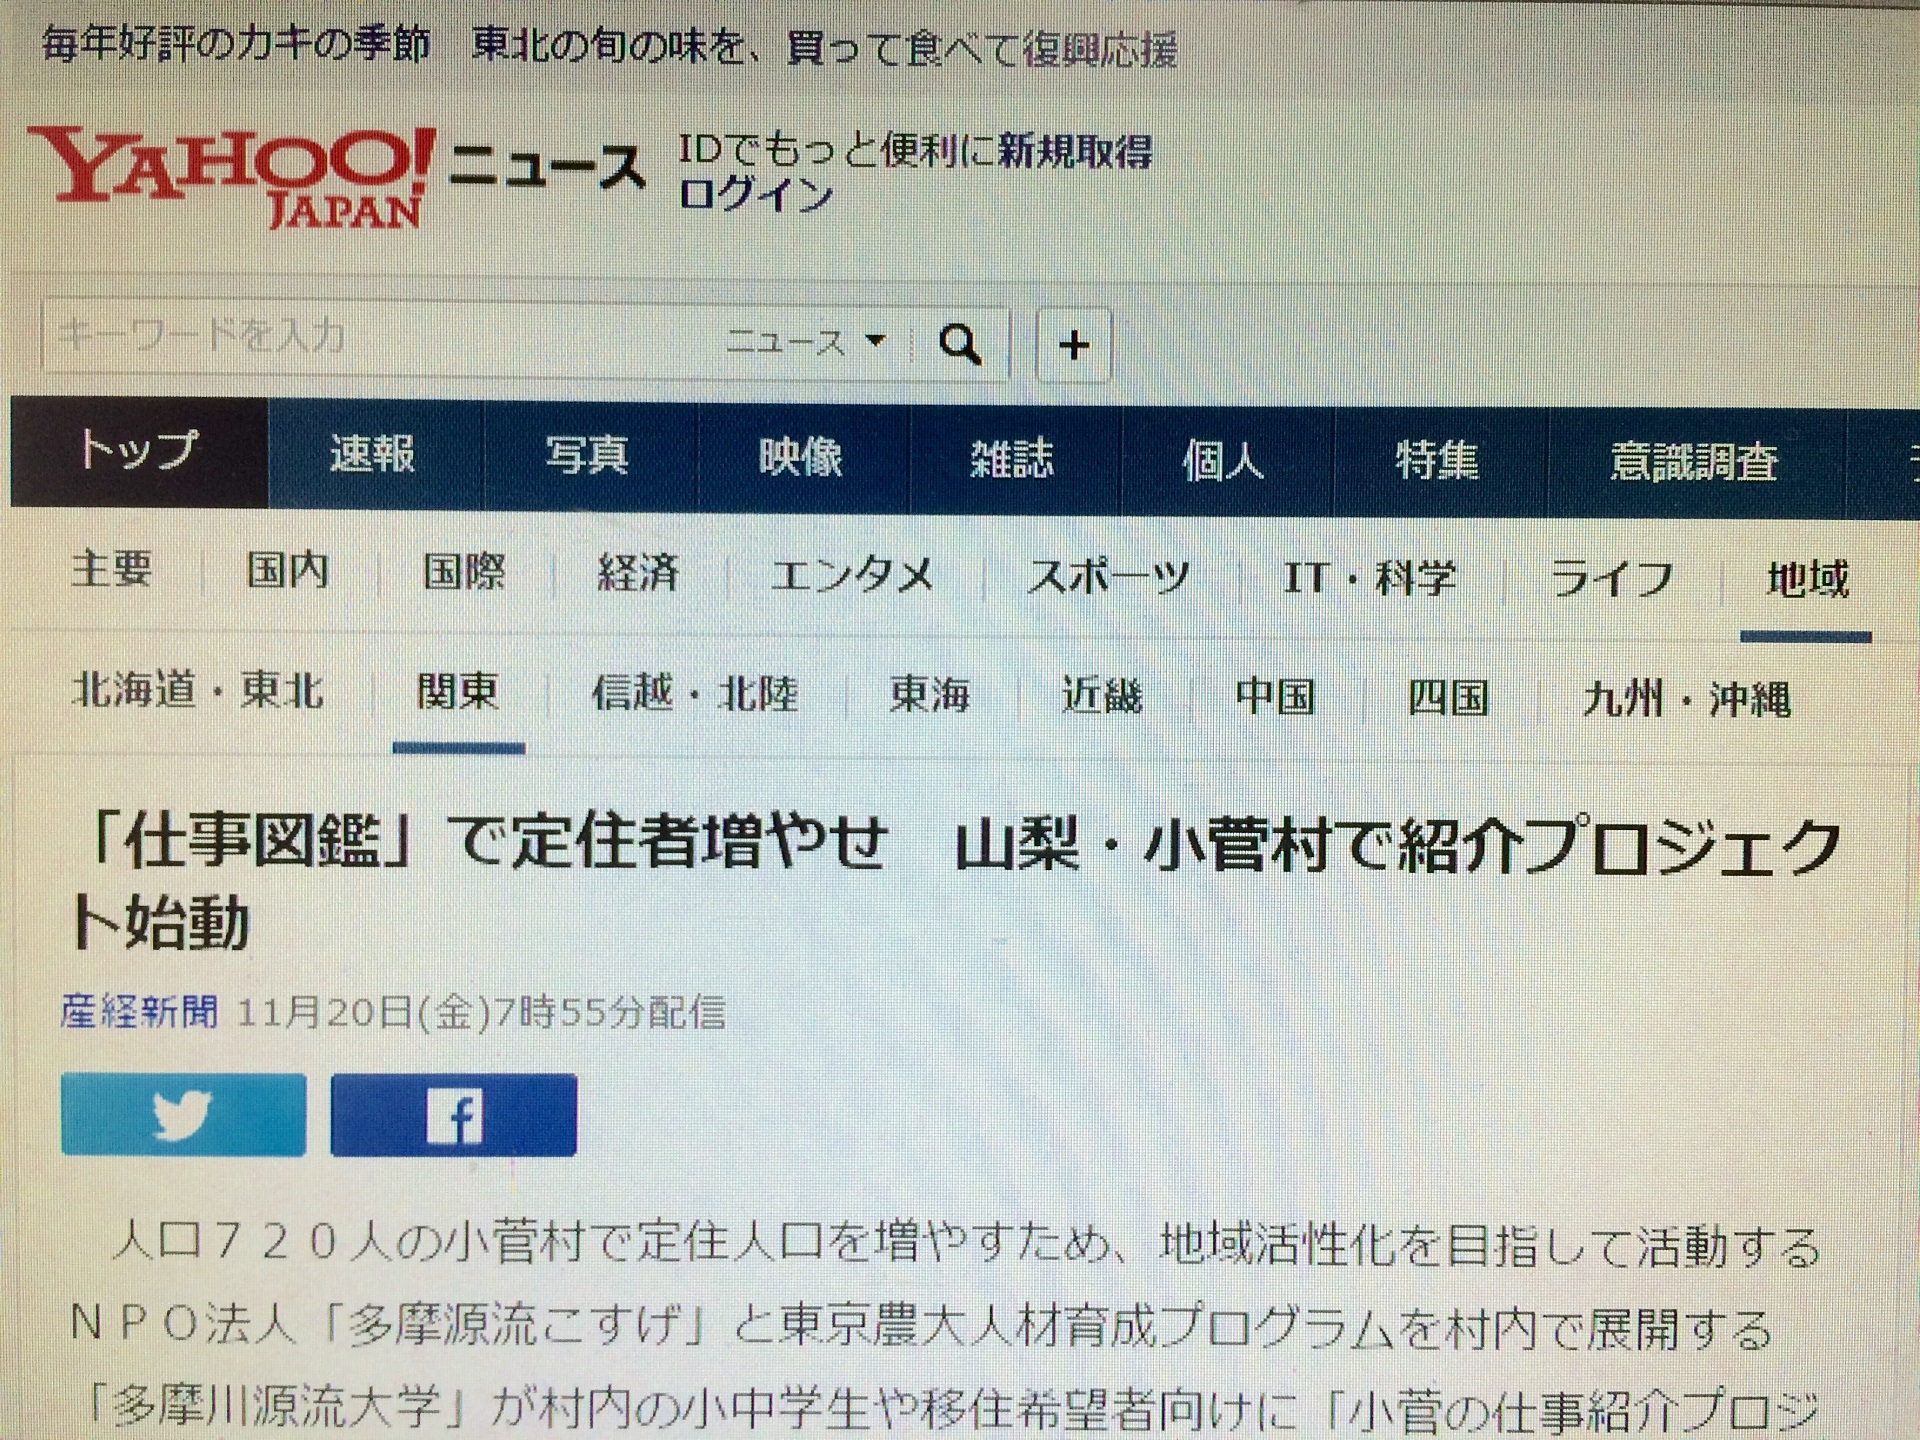 小菅村の仕事紹介プロジェクトが産経新聞・Yahooニュースに掲載されました